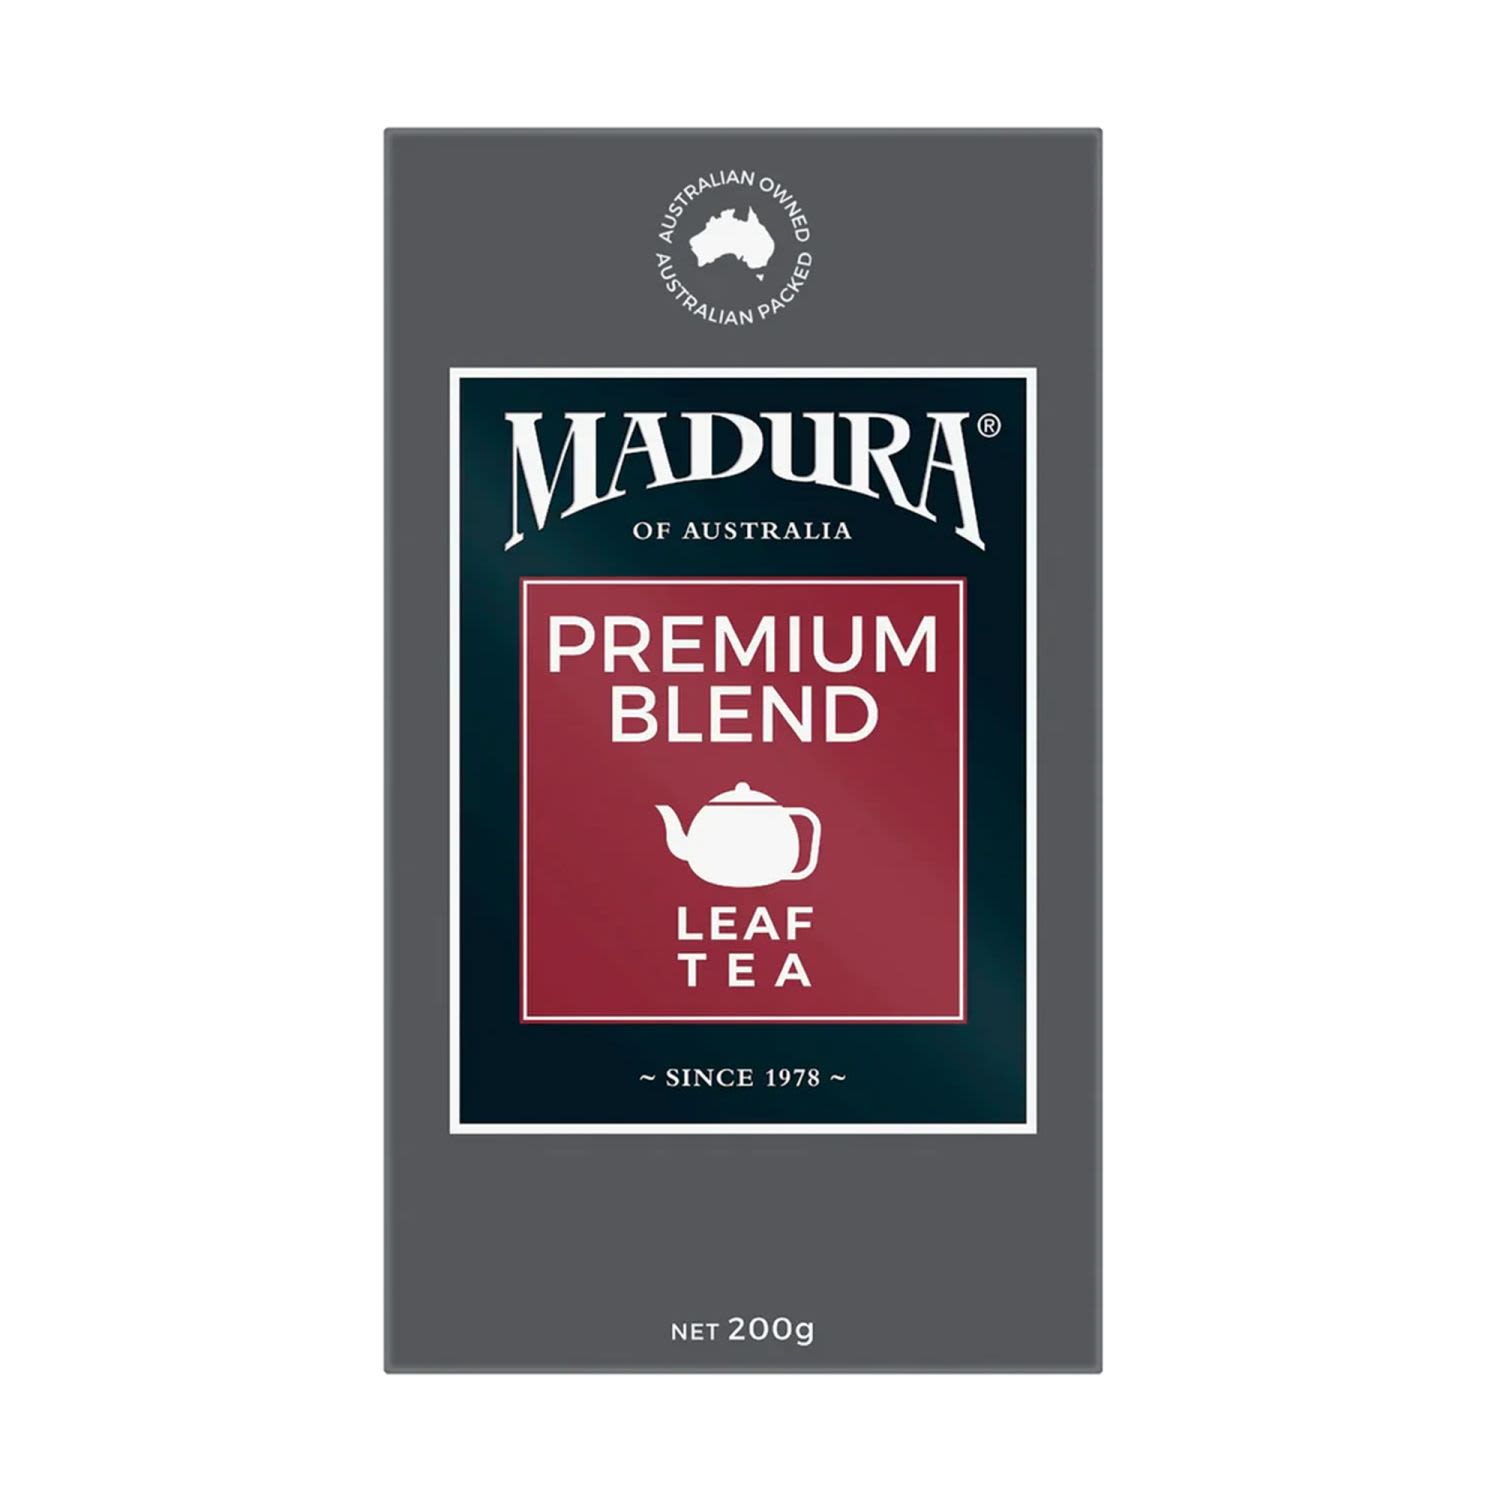 Madura Premium Blend Tea, 200 Gram